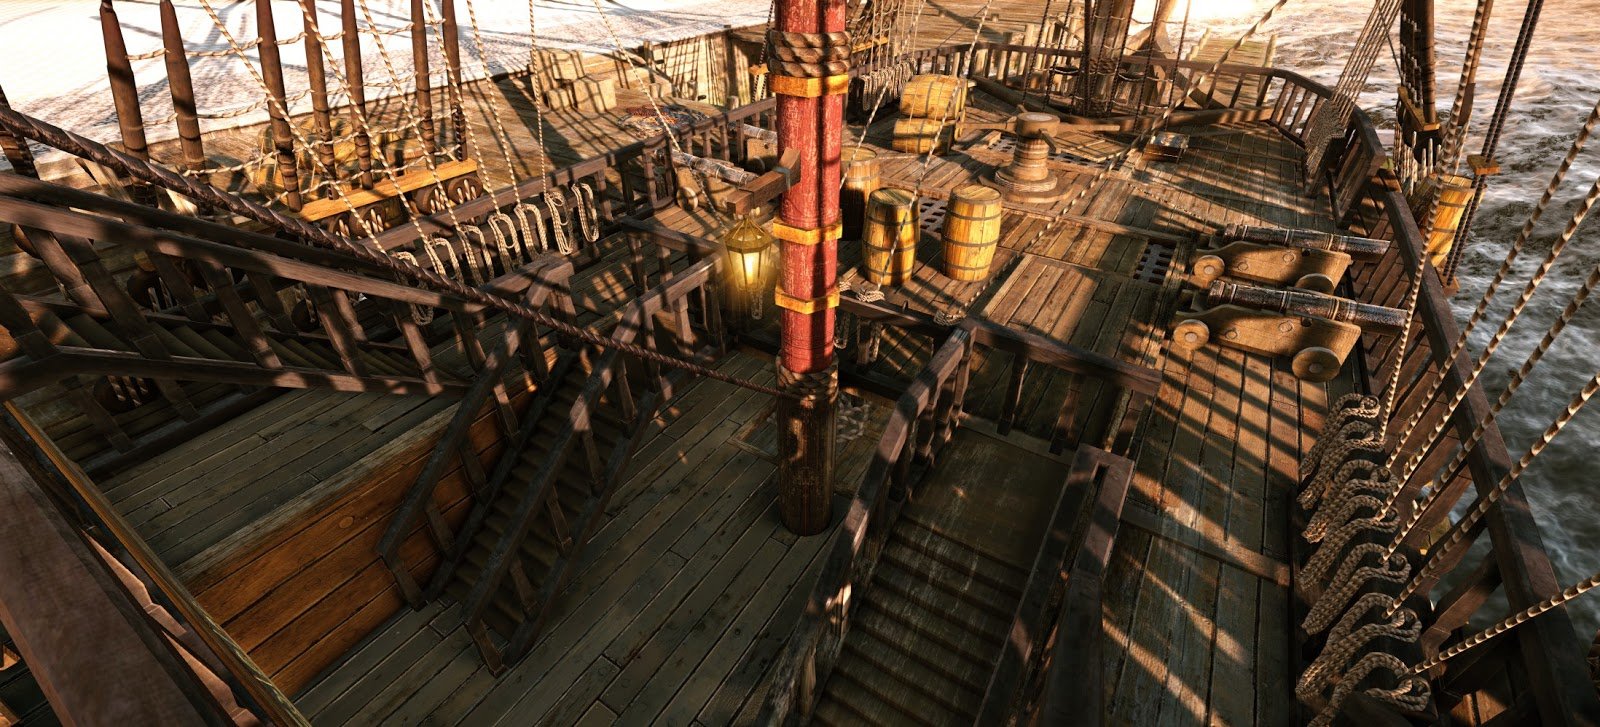 Палуба судна 3. Палуба пиратского корабля. Палуба старинного корабля. Верхняя палуба корабля. Палуба вид сверху.